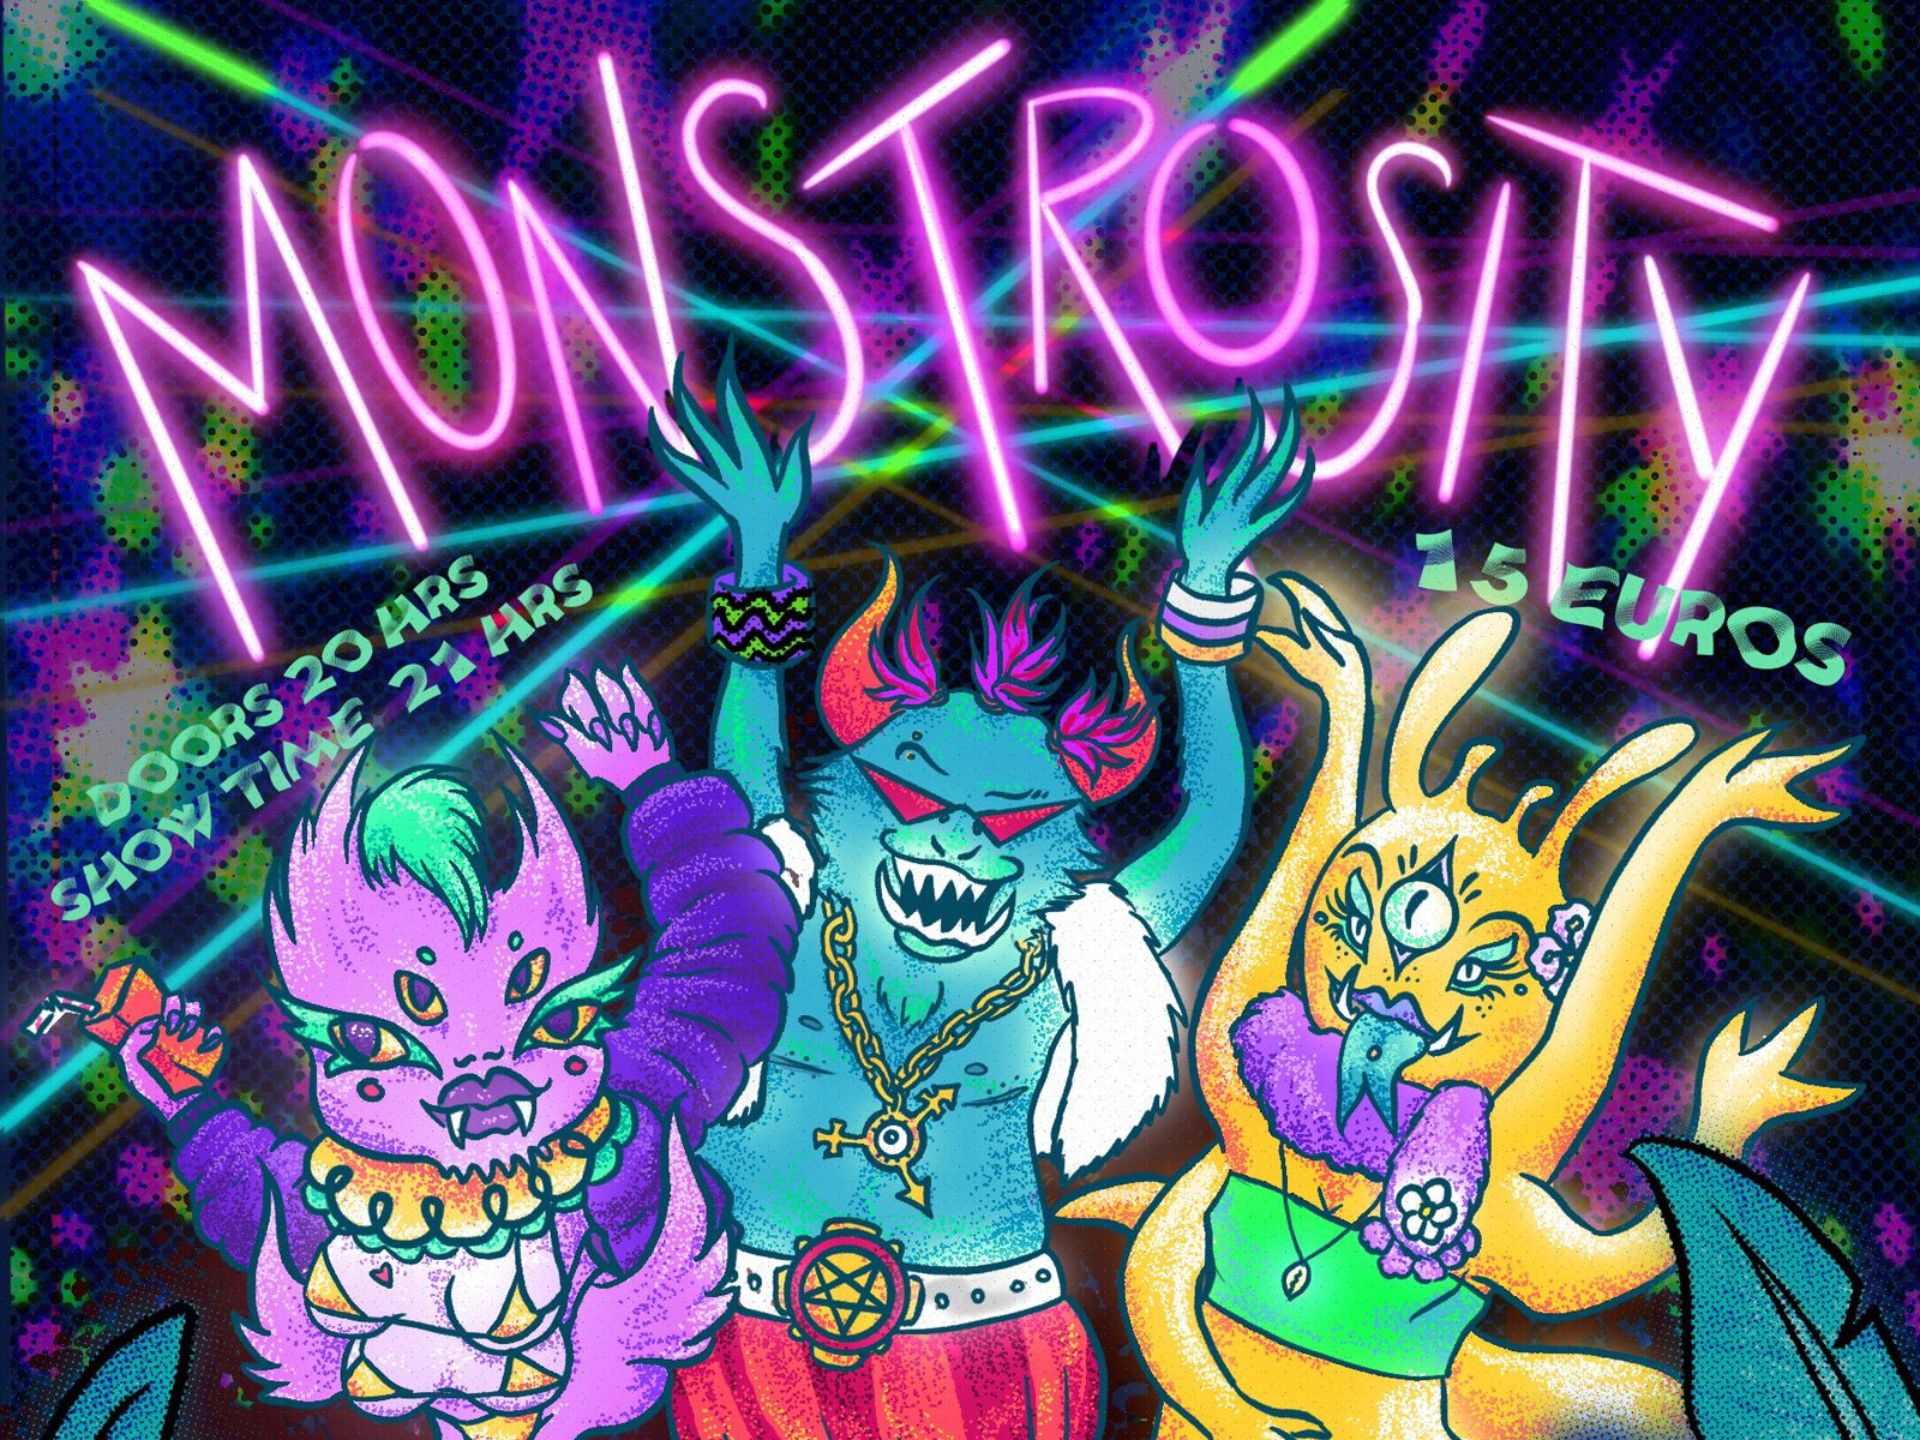 Monstrosity Show – Journée de la visibilité trans